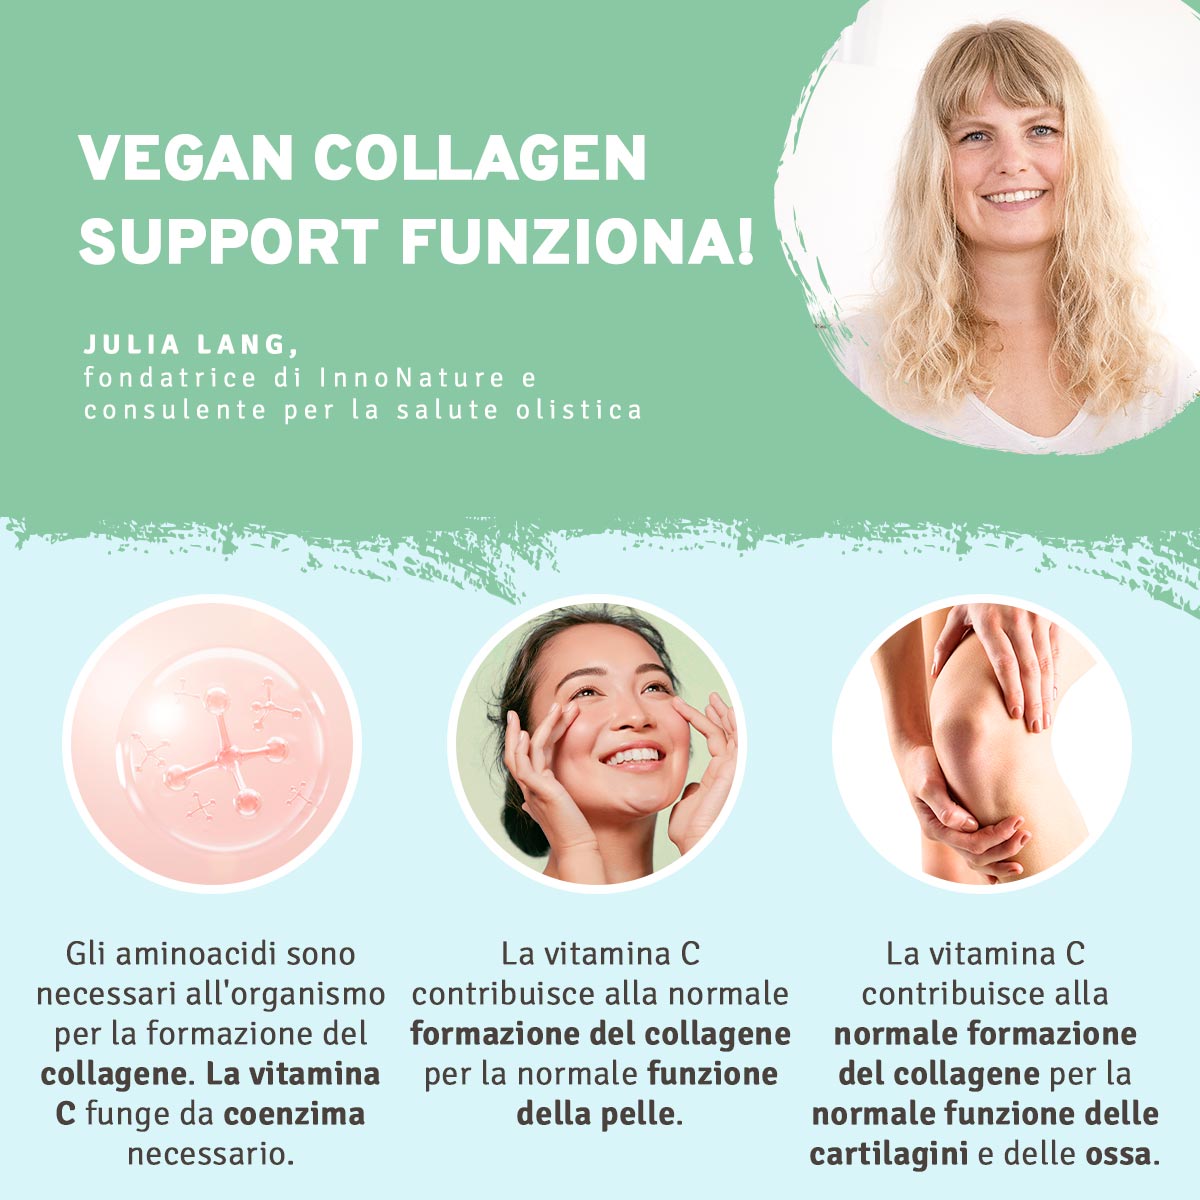 Vegan Collagen Support: rosa canina e aminoacidi al supporto del collagene